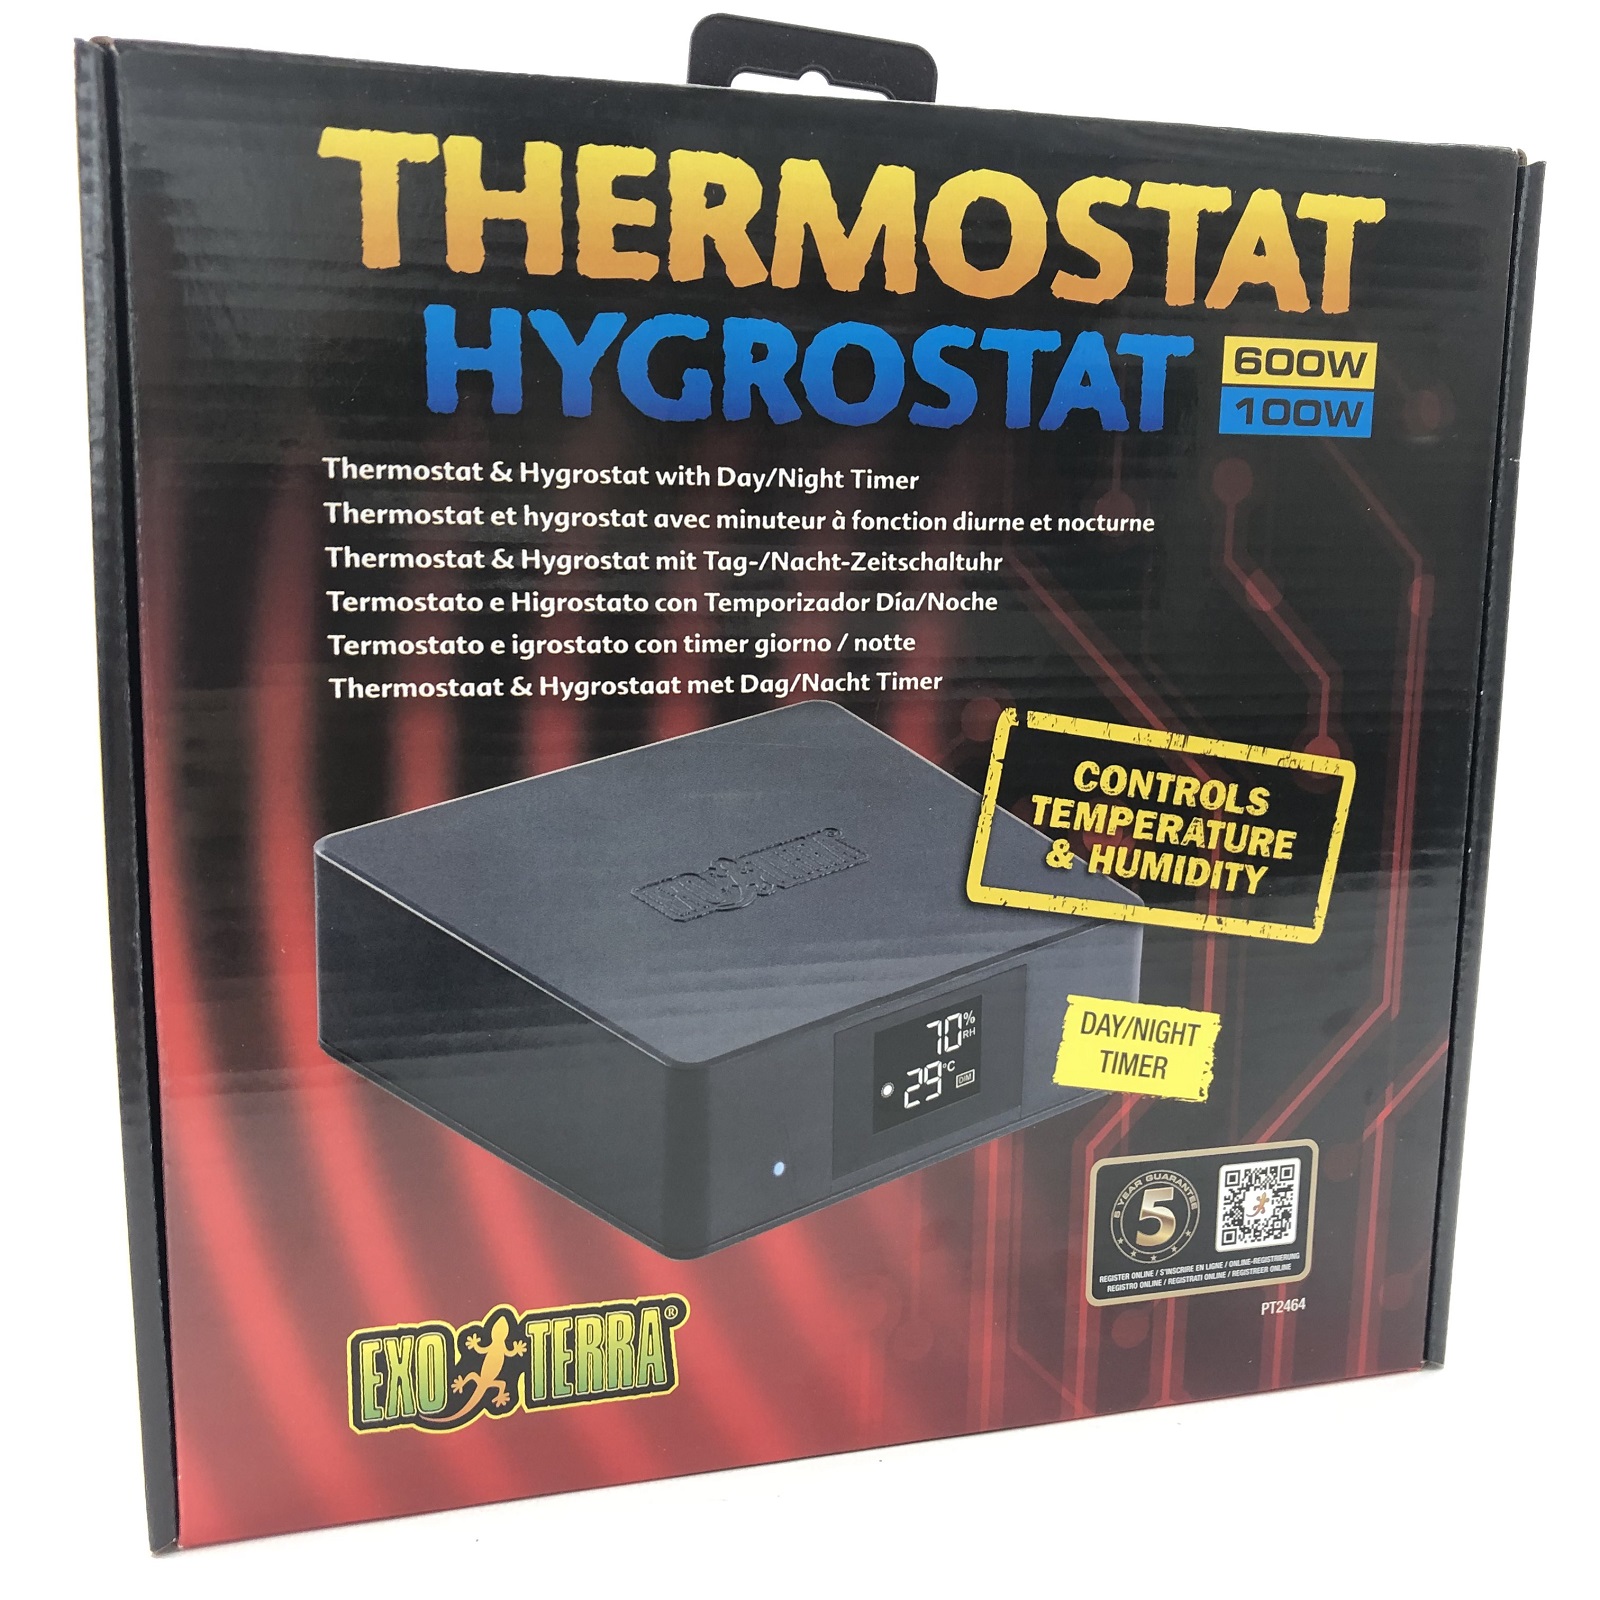 Thermostat & Hygrostat 600W